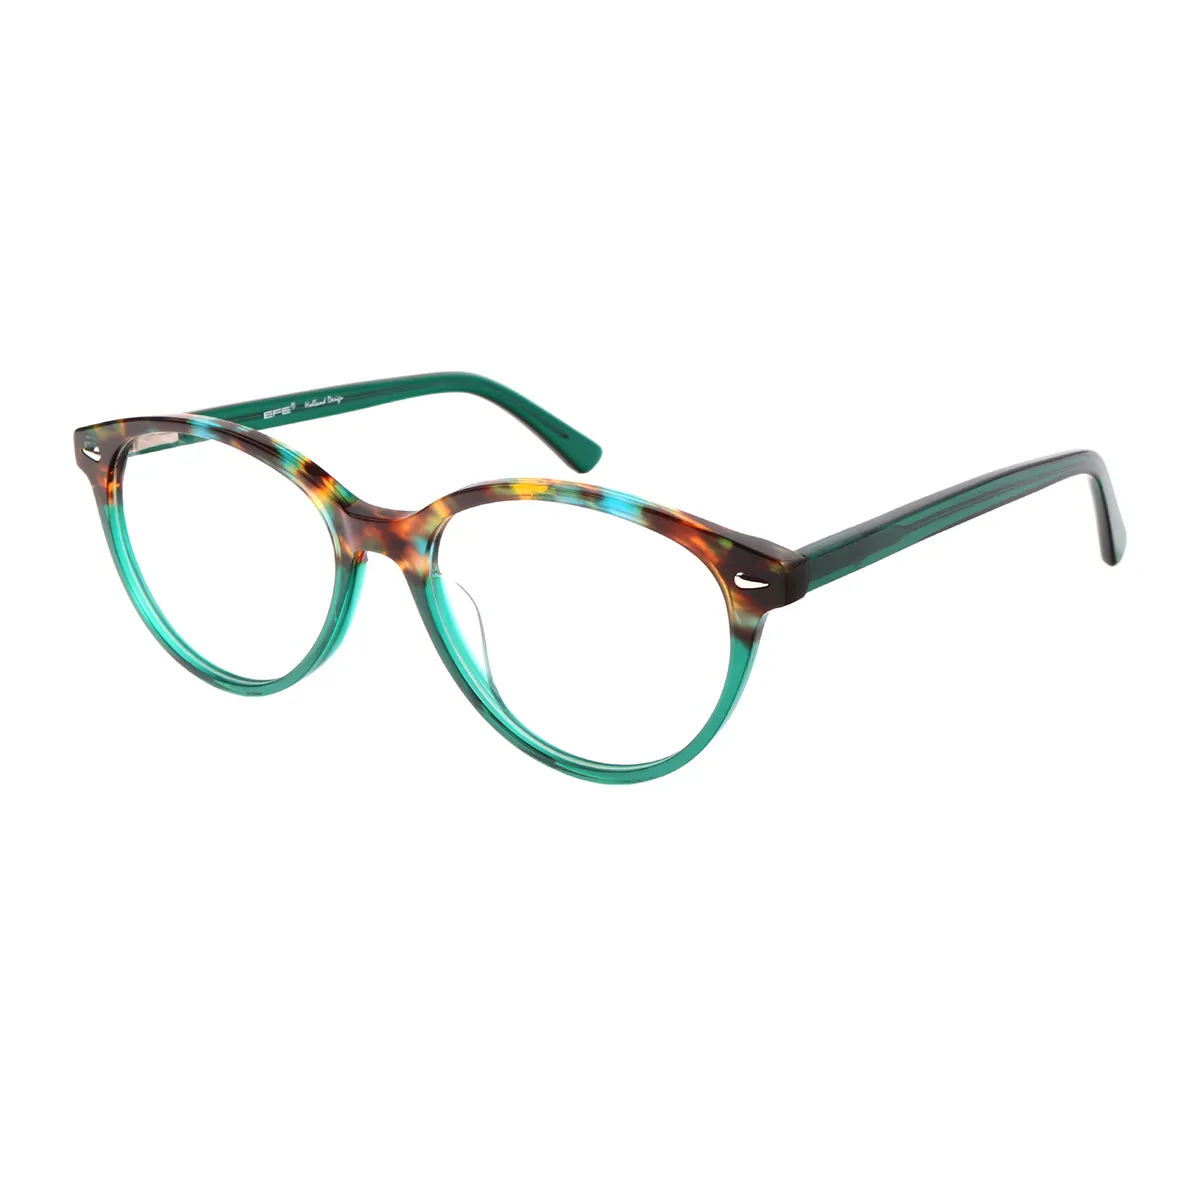 Classic Oval Demi Eyeglasses for Women & Men